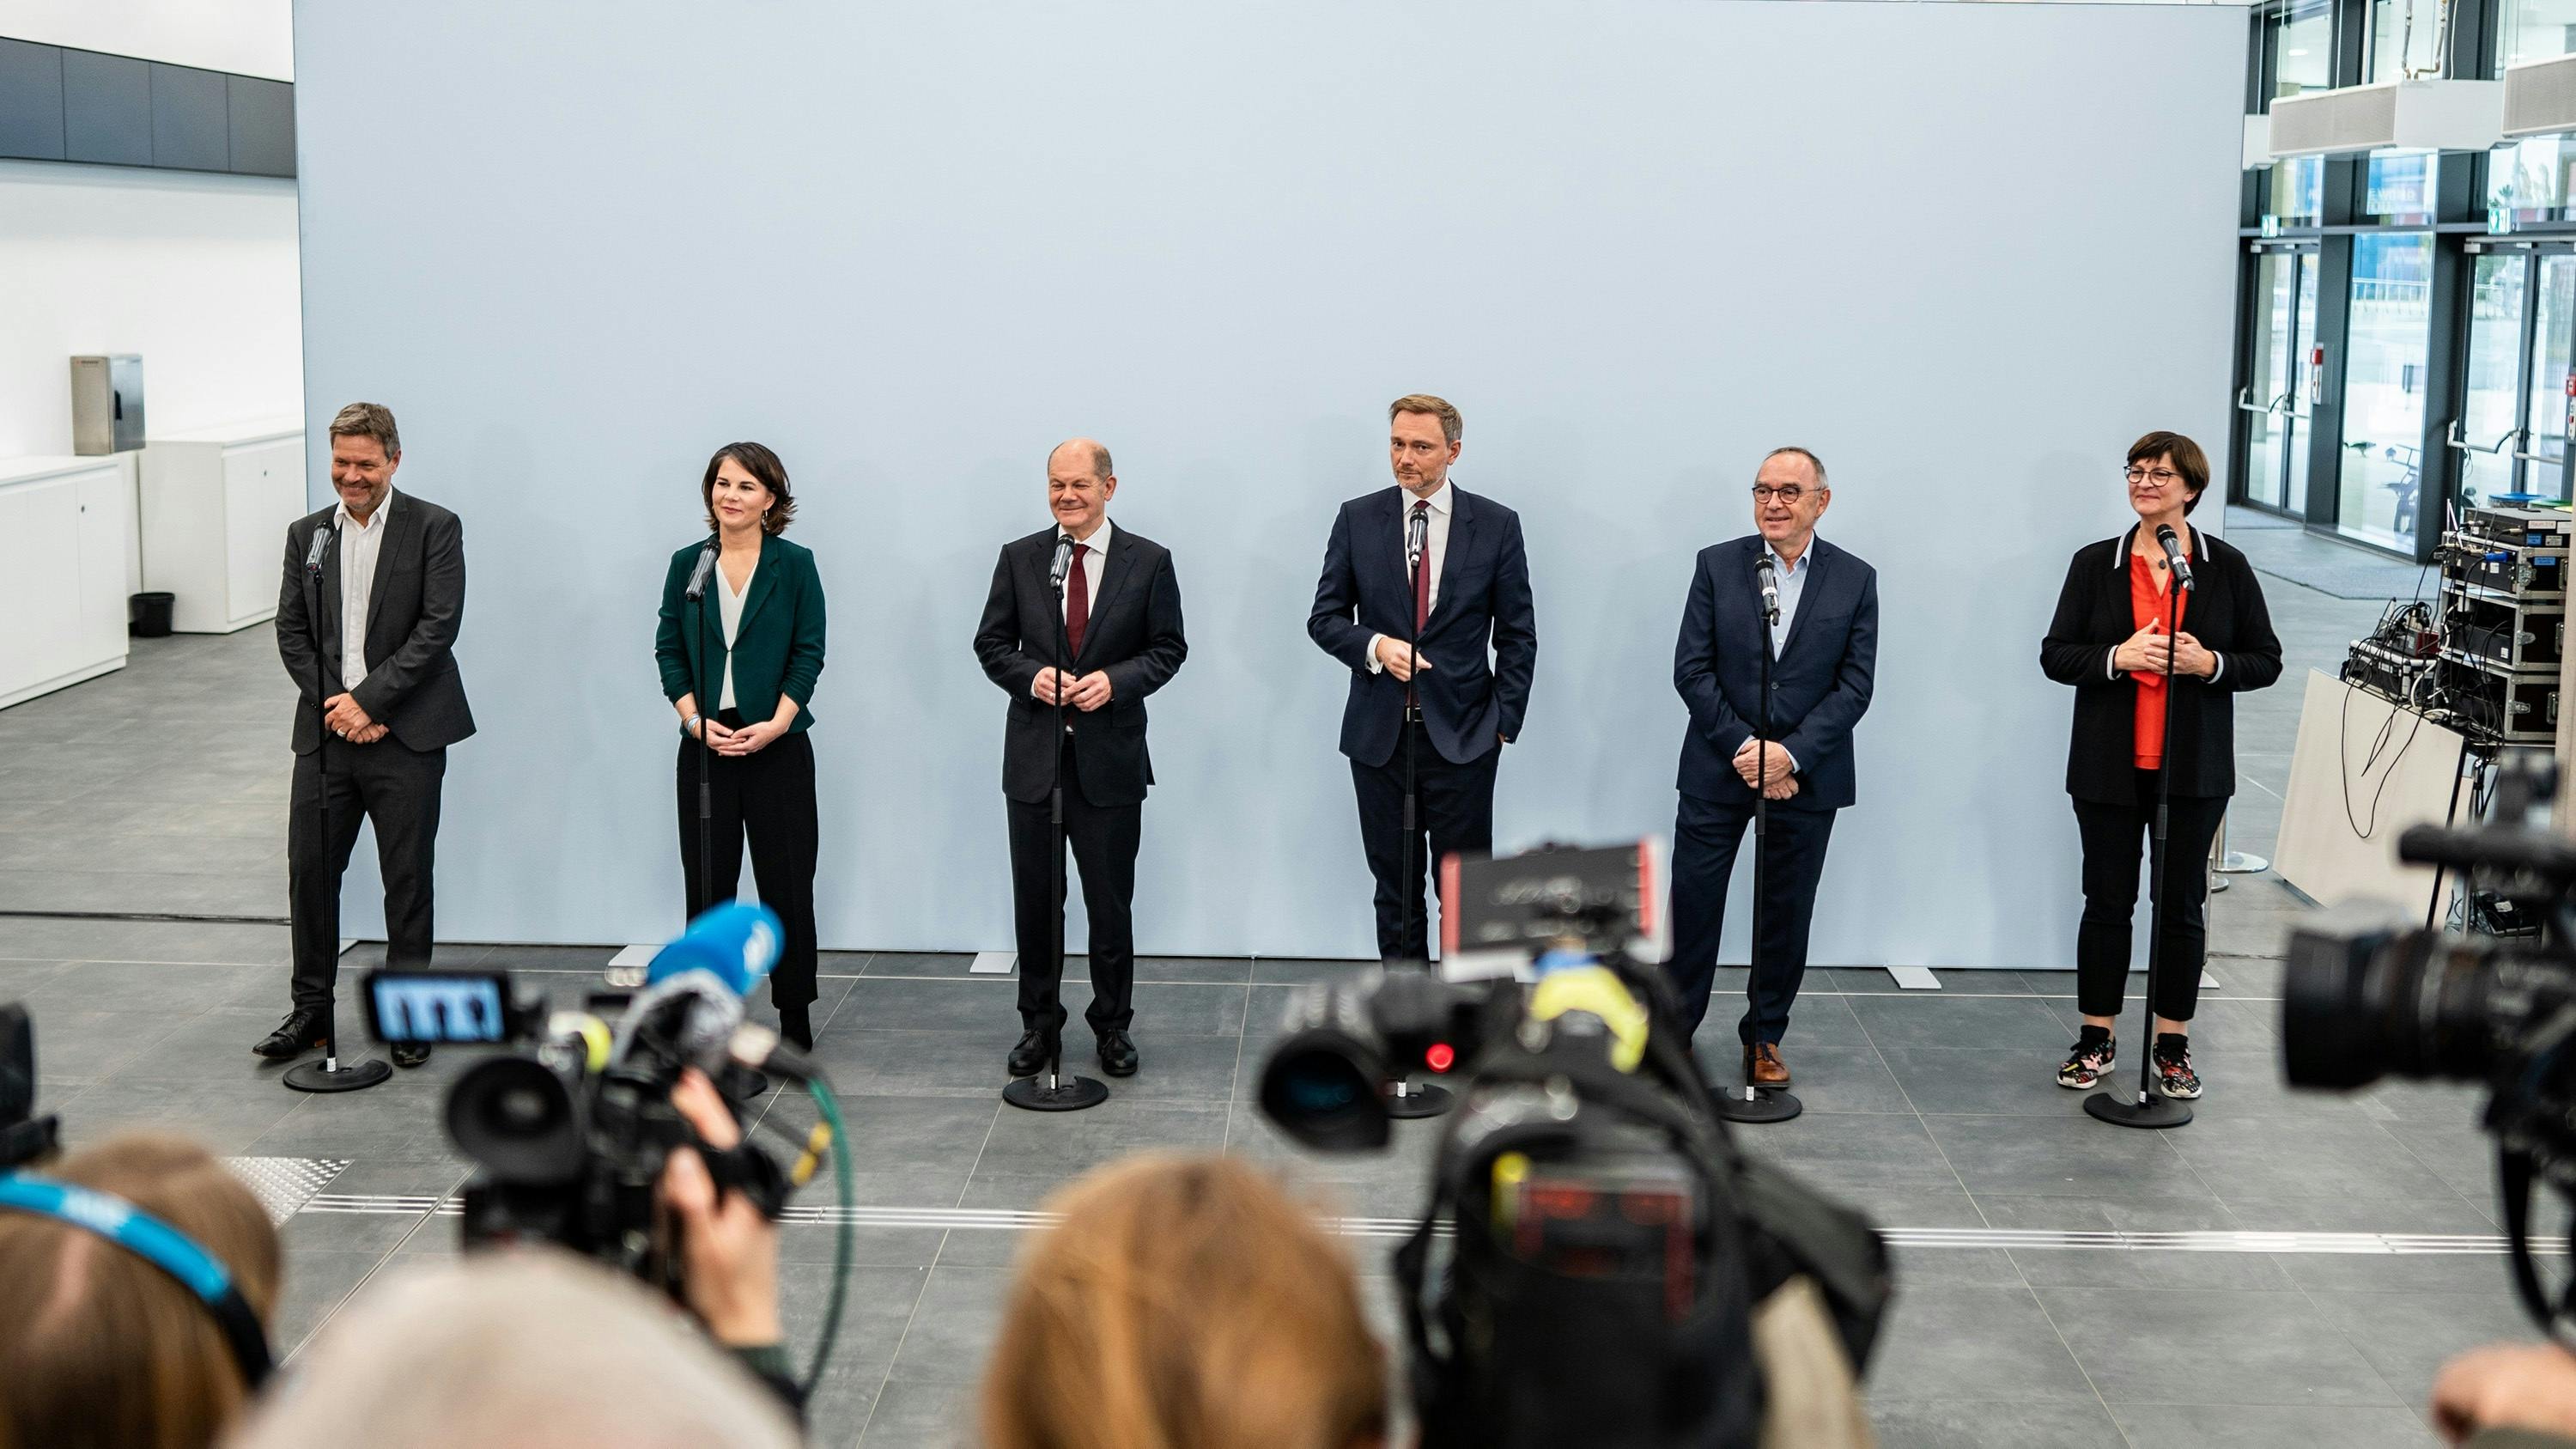 Robert Habeck (GRÜNE), AnnalenaBaerbock (GRÜNE), Olaf Scholz (SPD), Christian Lindner (FDP), Norbert Walter-Borjans (SPD) und Saskia Esken (SPD) stehen nebeneinander und geben ein Pressestatement.